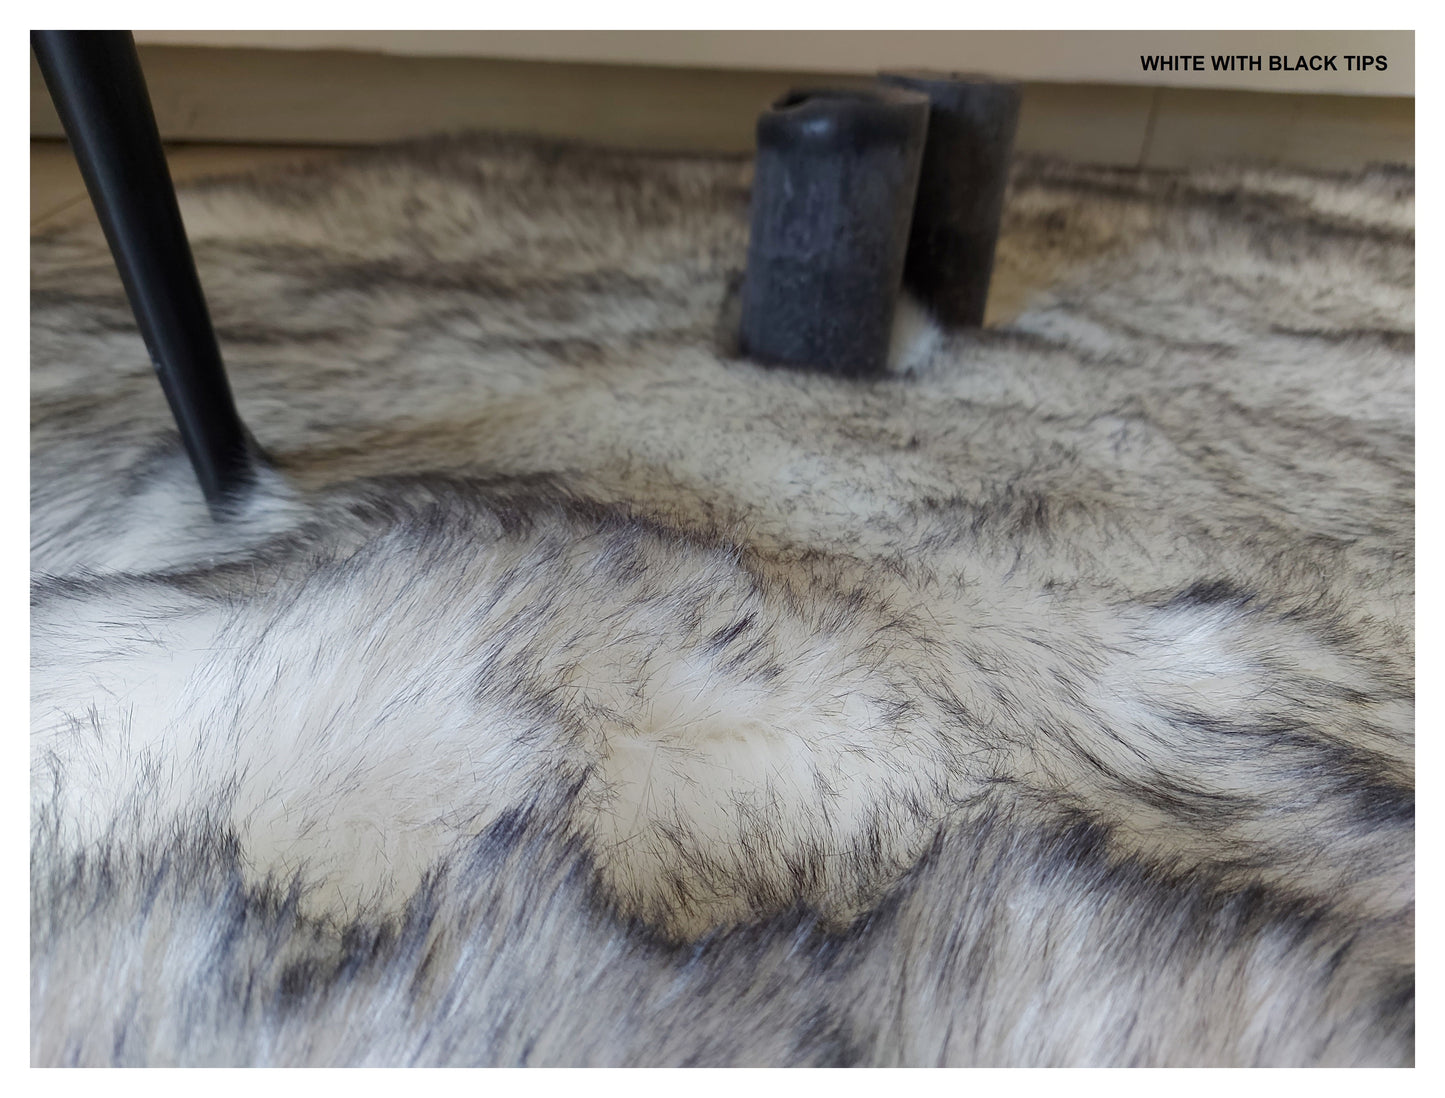 Faux sheepskin rug Oval Shaped 8'X11'8''(240cm x 360cm)